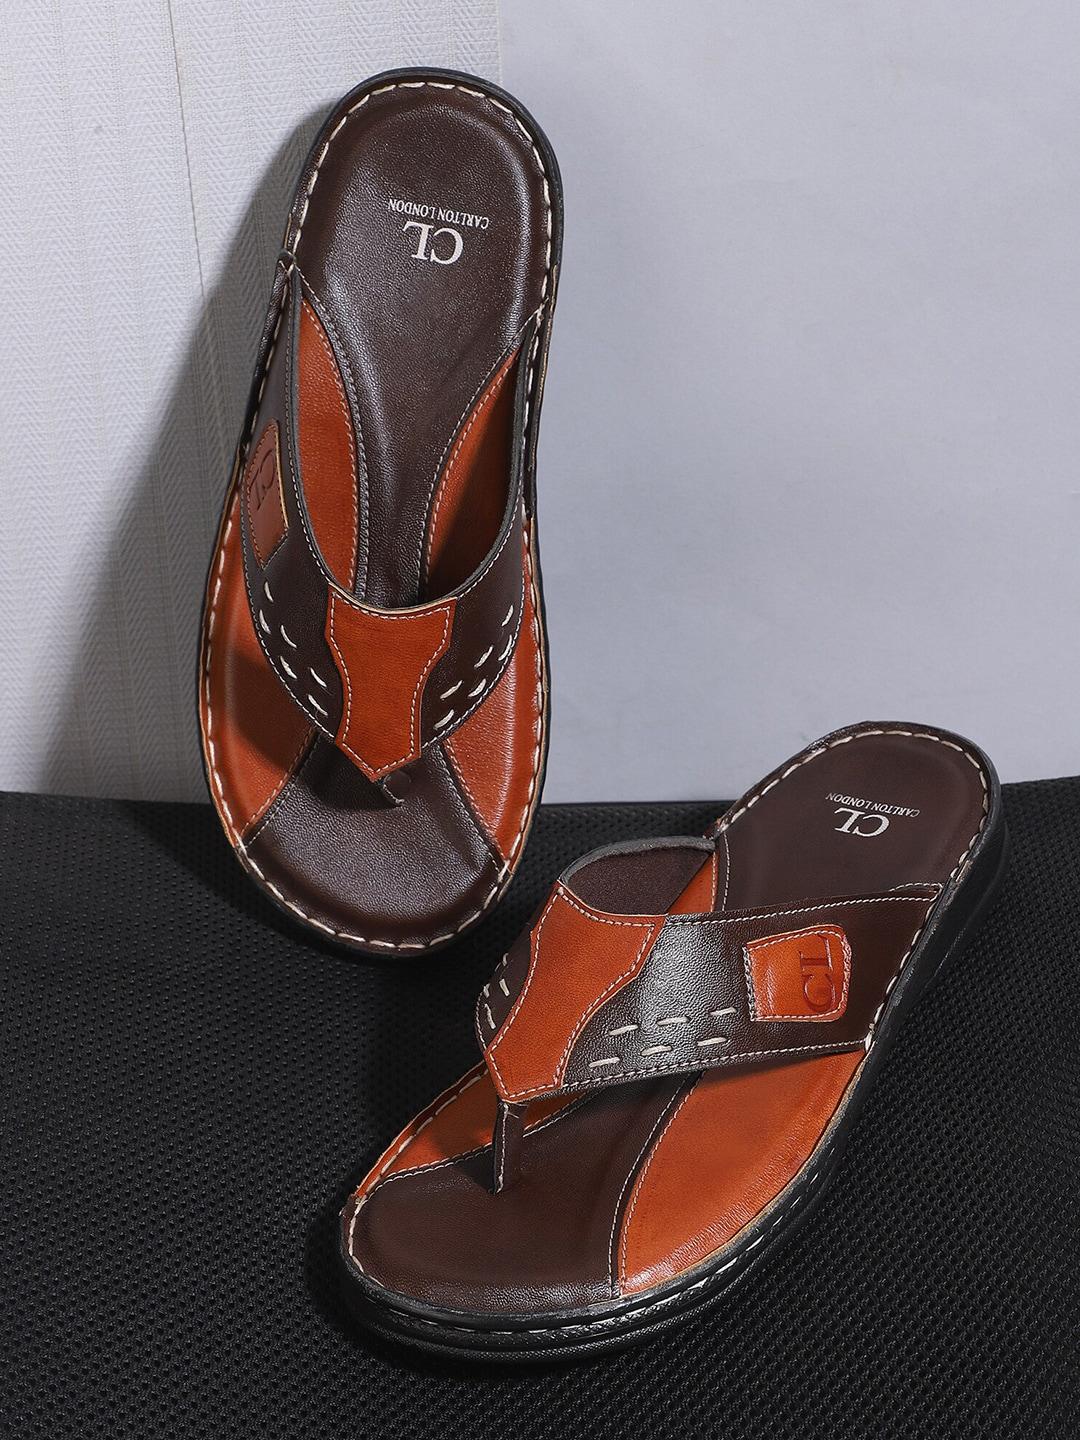 carlton-london-men-brown-&-tan-comfort-sandals